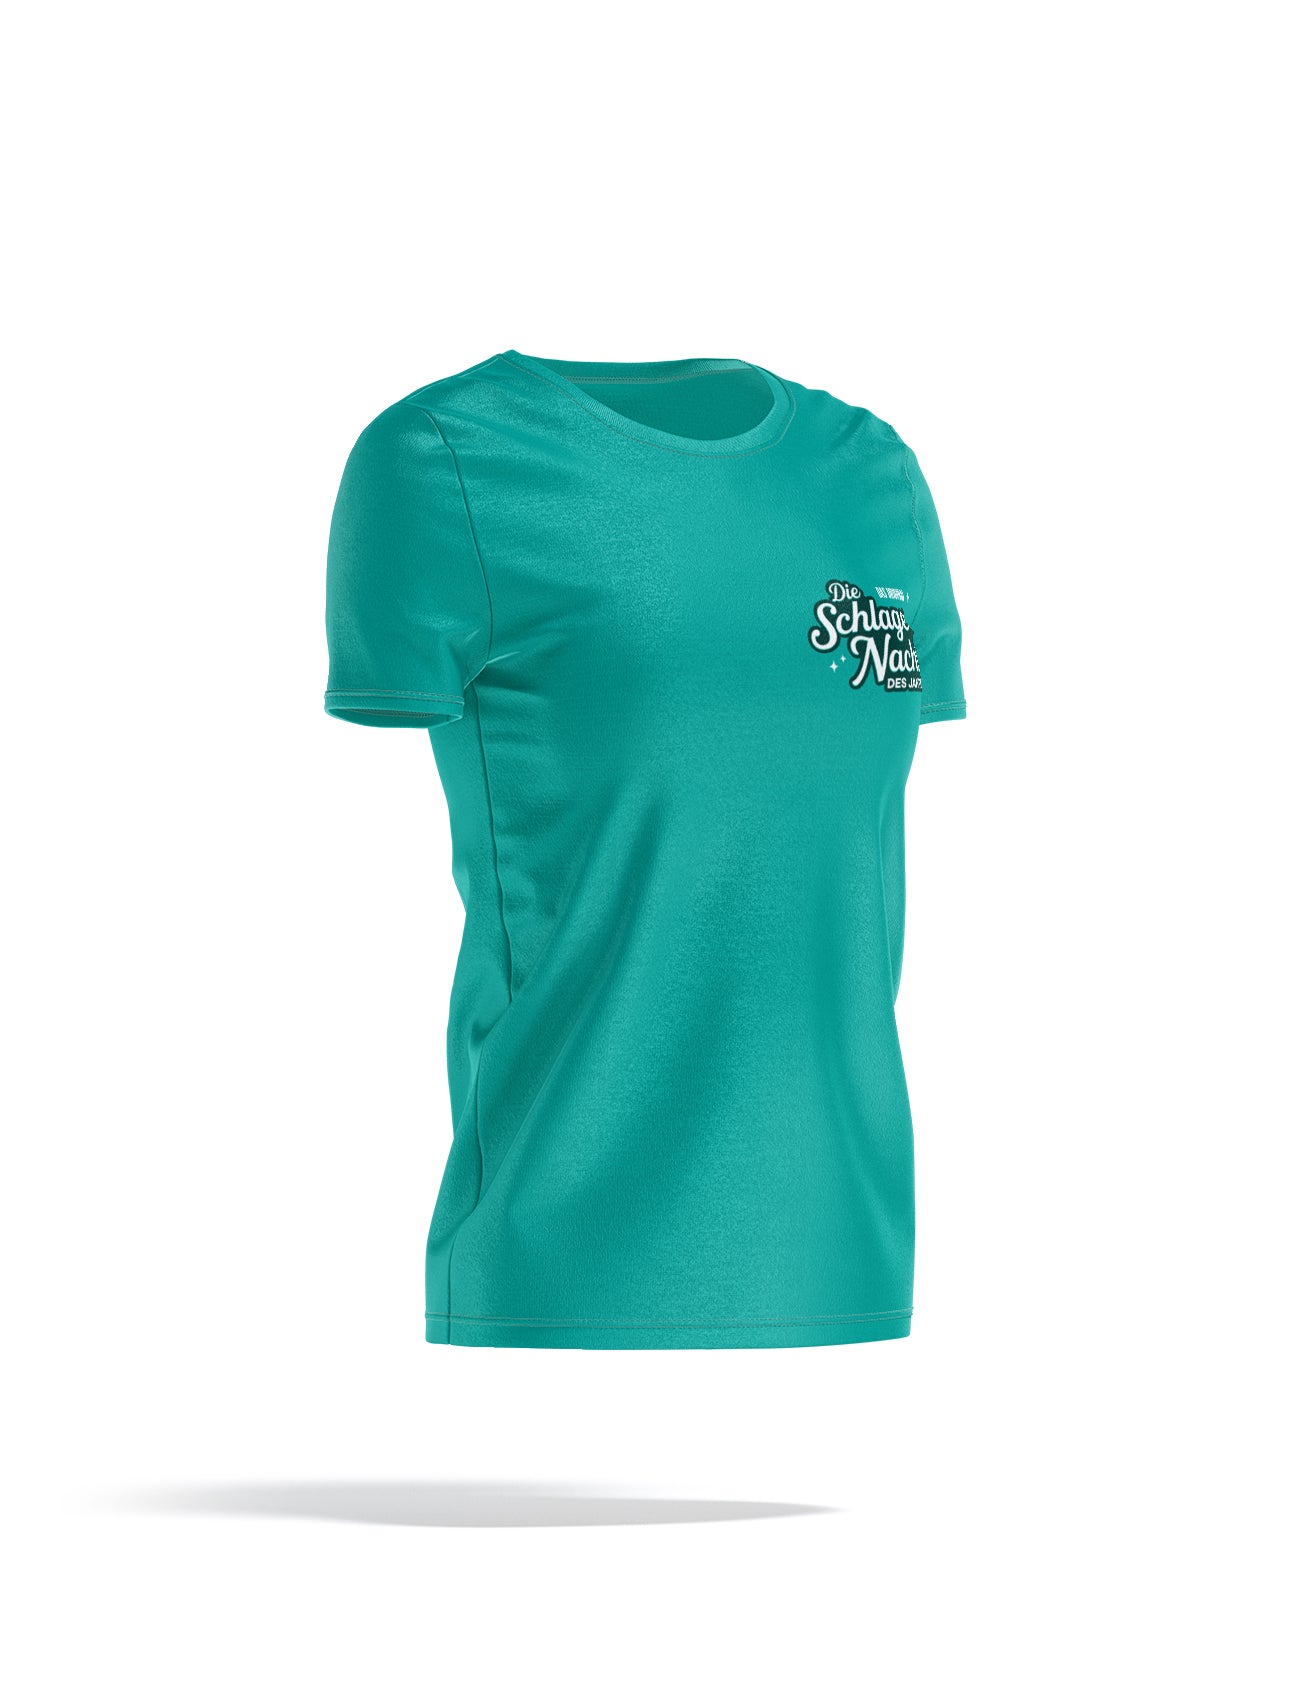 Damen T-Shirt in Karibikblau, Logo vorne und hinten